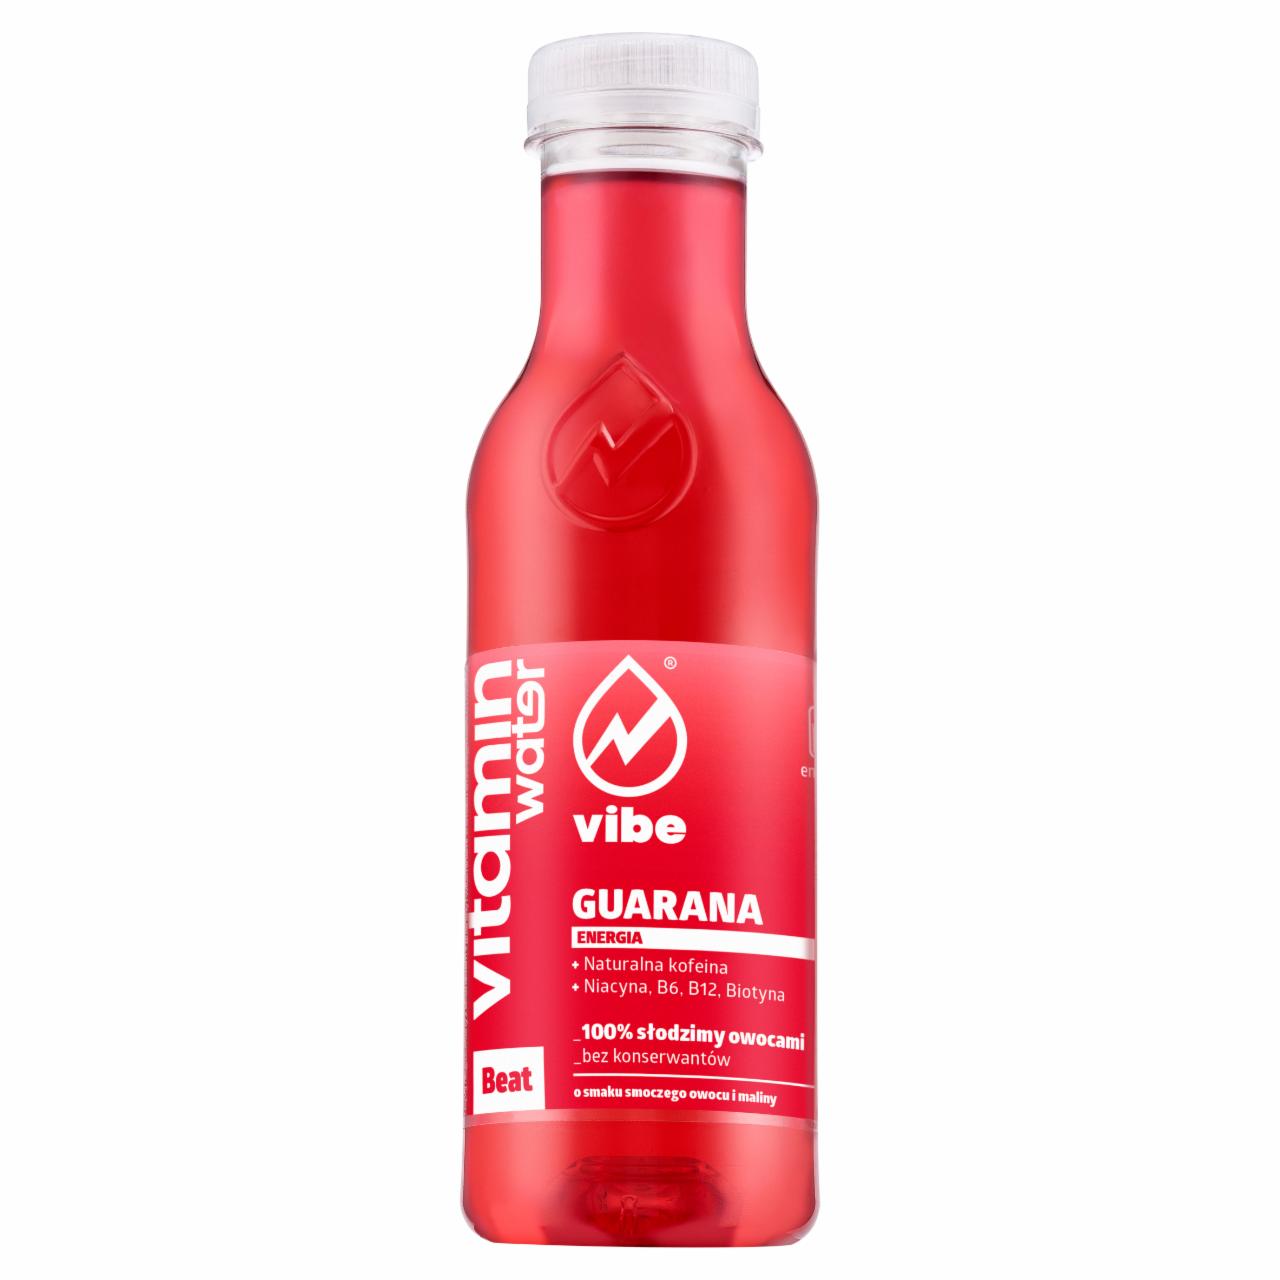 Zdjęcia - Vibe Vitamin Water Beat Guarana Napój niegazowany 444 ml